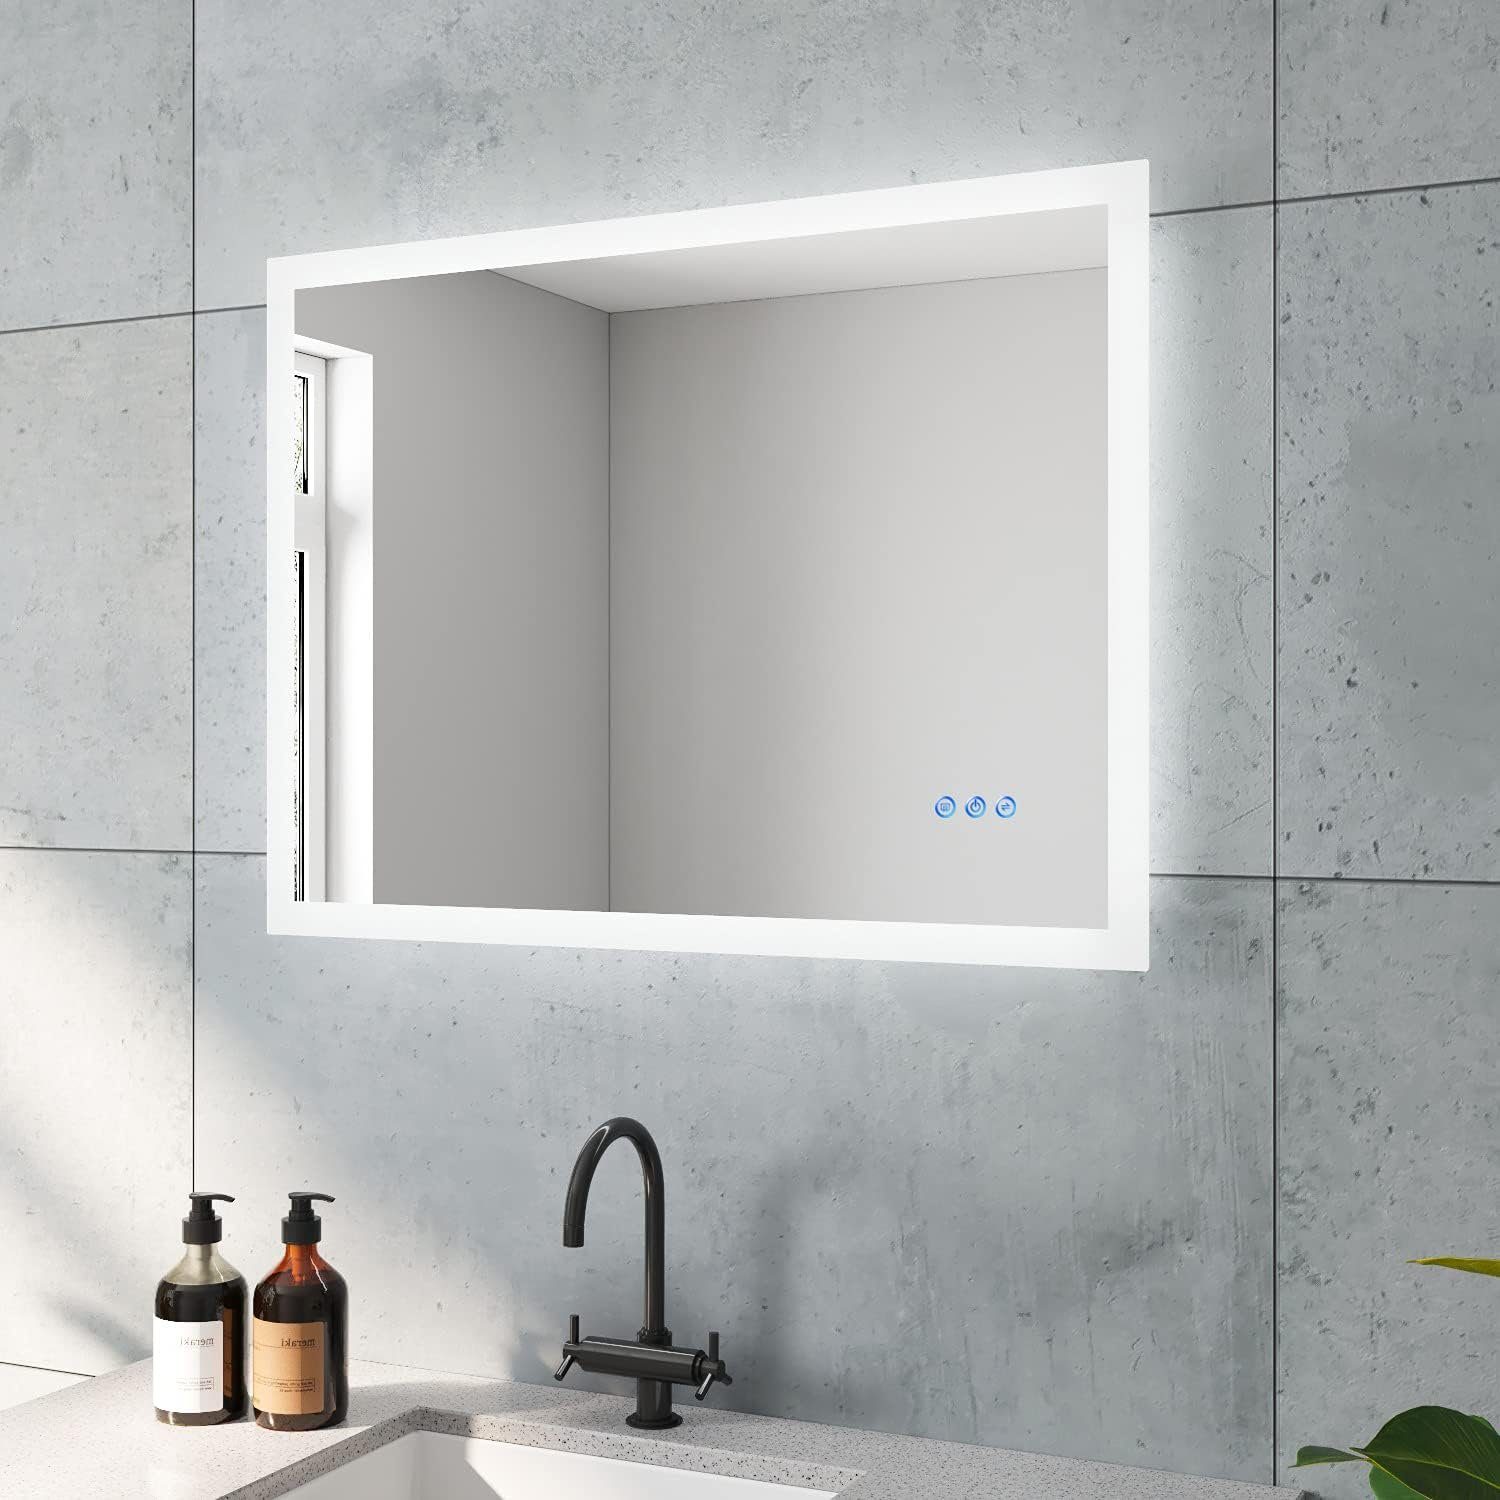 AQUALAVOS Badspiegel LED Spiegel Badspiegel mit 2 Lichtfarbe Beleuchtung Badezimmerspiegel, 80x60cm, mit Anti-Beschlag-Funktion, 6400K Kaltweiß & Warmweiß 3000K